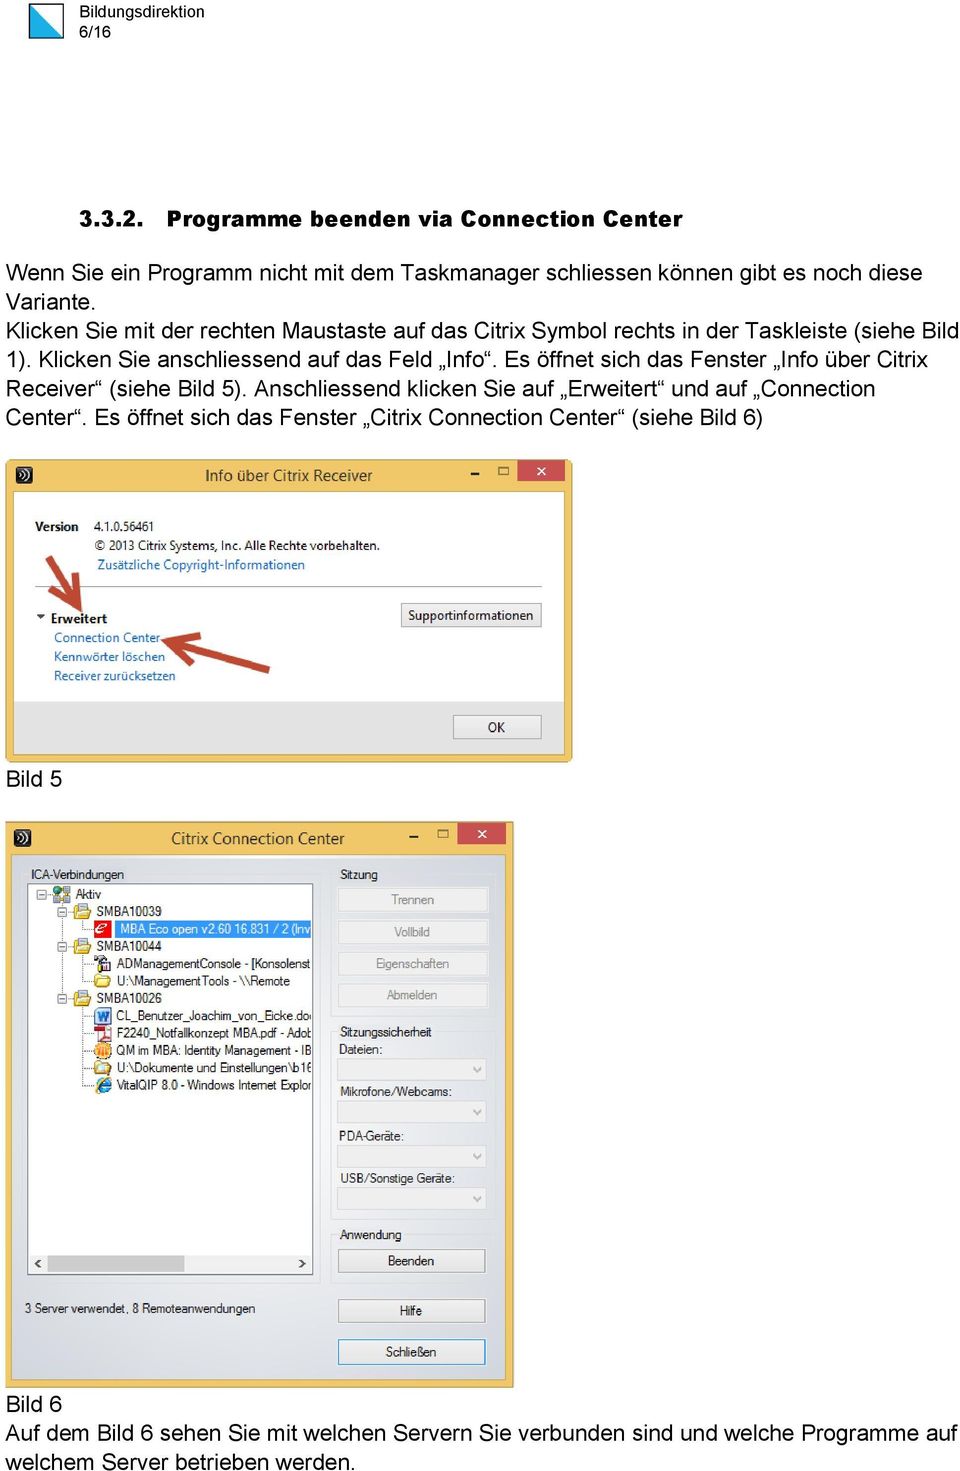 Es öffnet sich das Fenster Info über Citrix Receiver (siehe Bild 5). Anschliessend klicken Sie auf Erweitert und auf Connection Center.